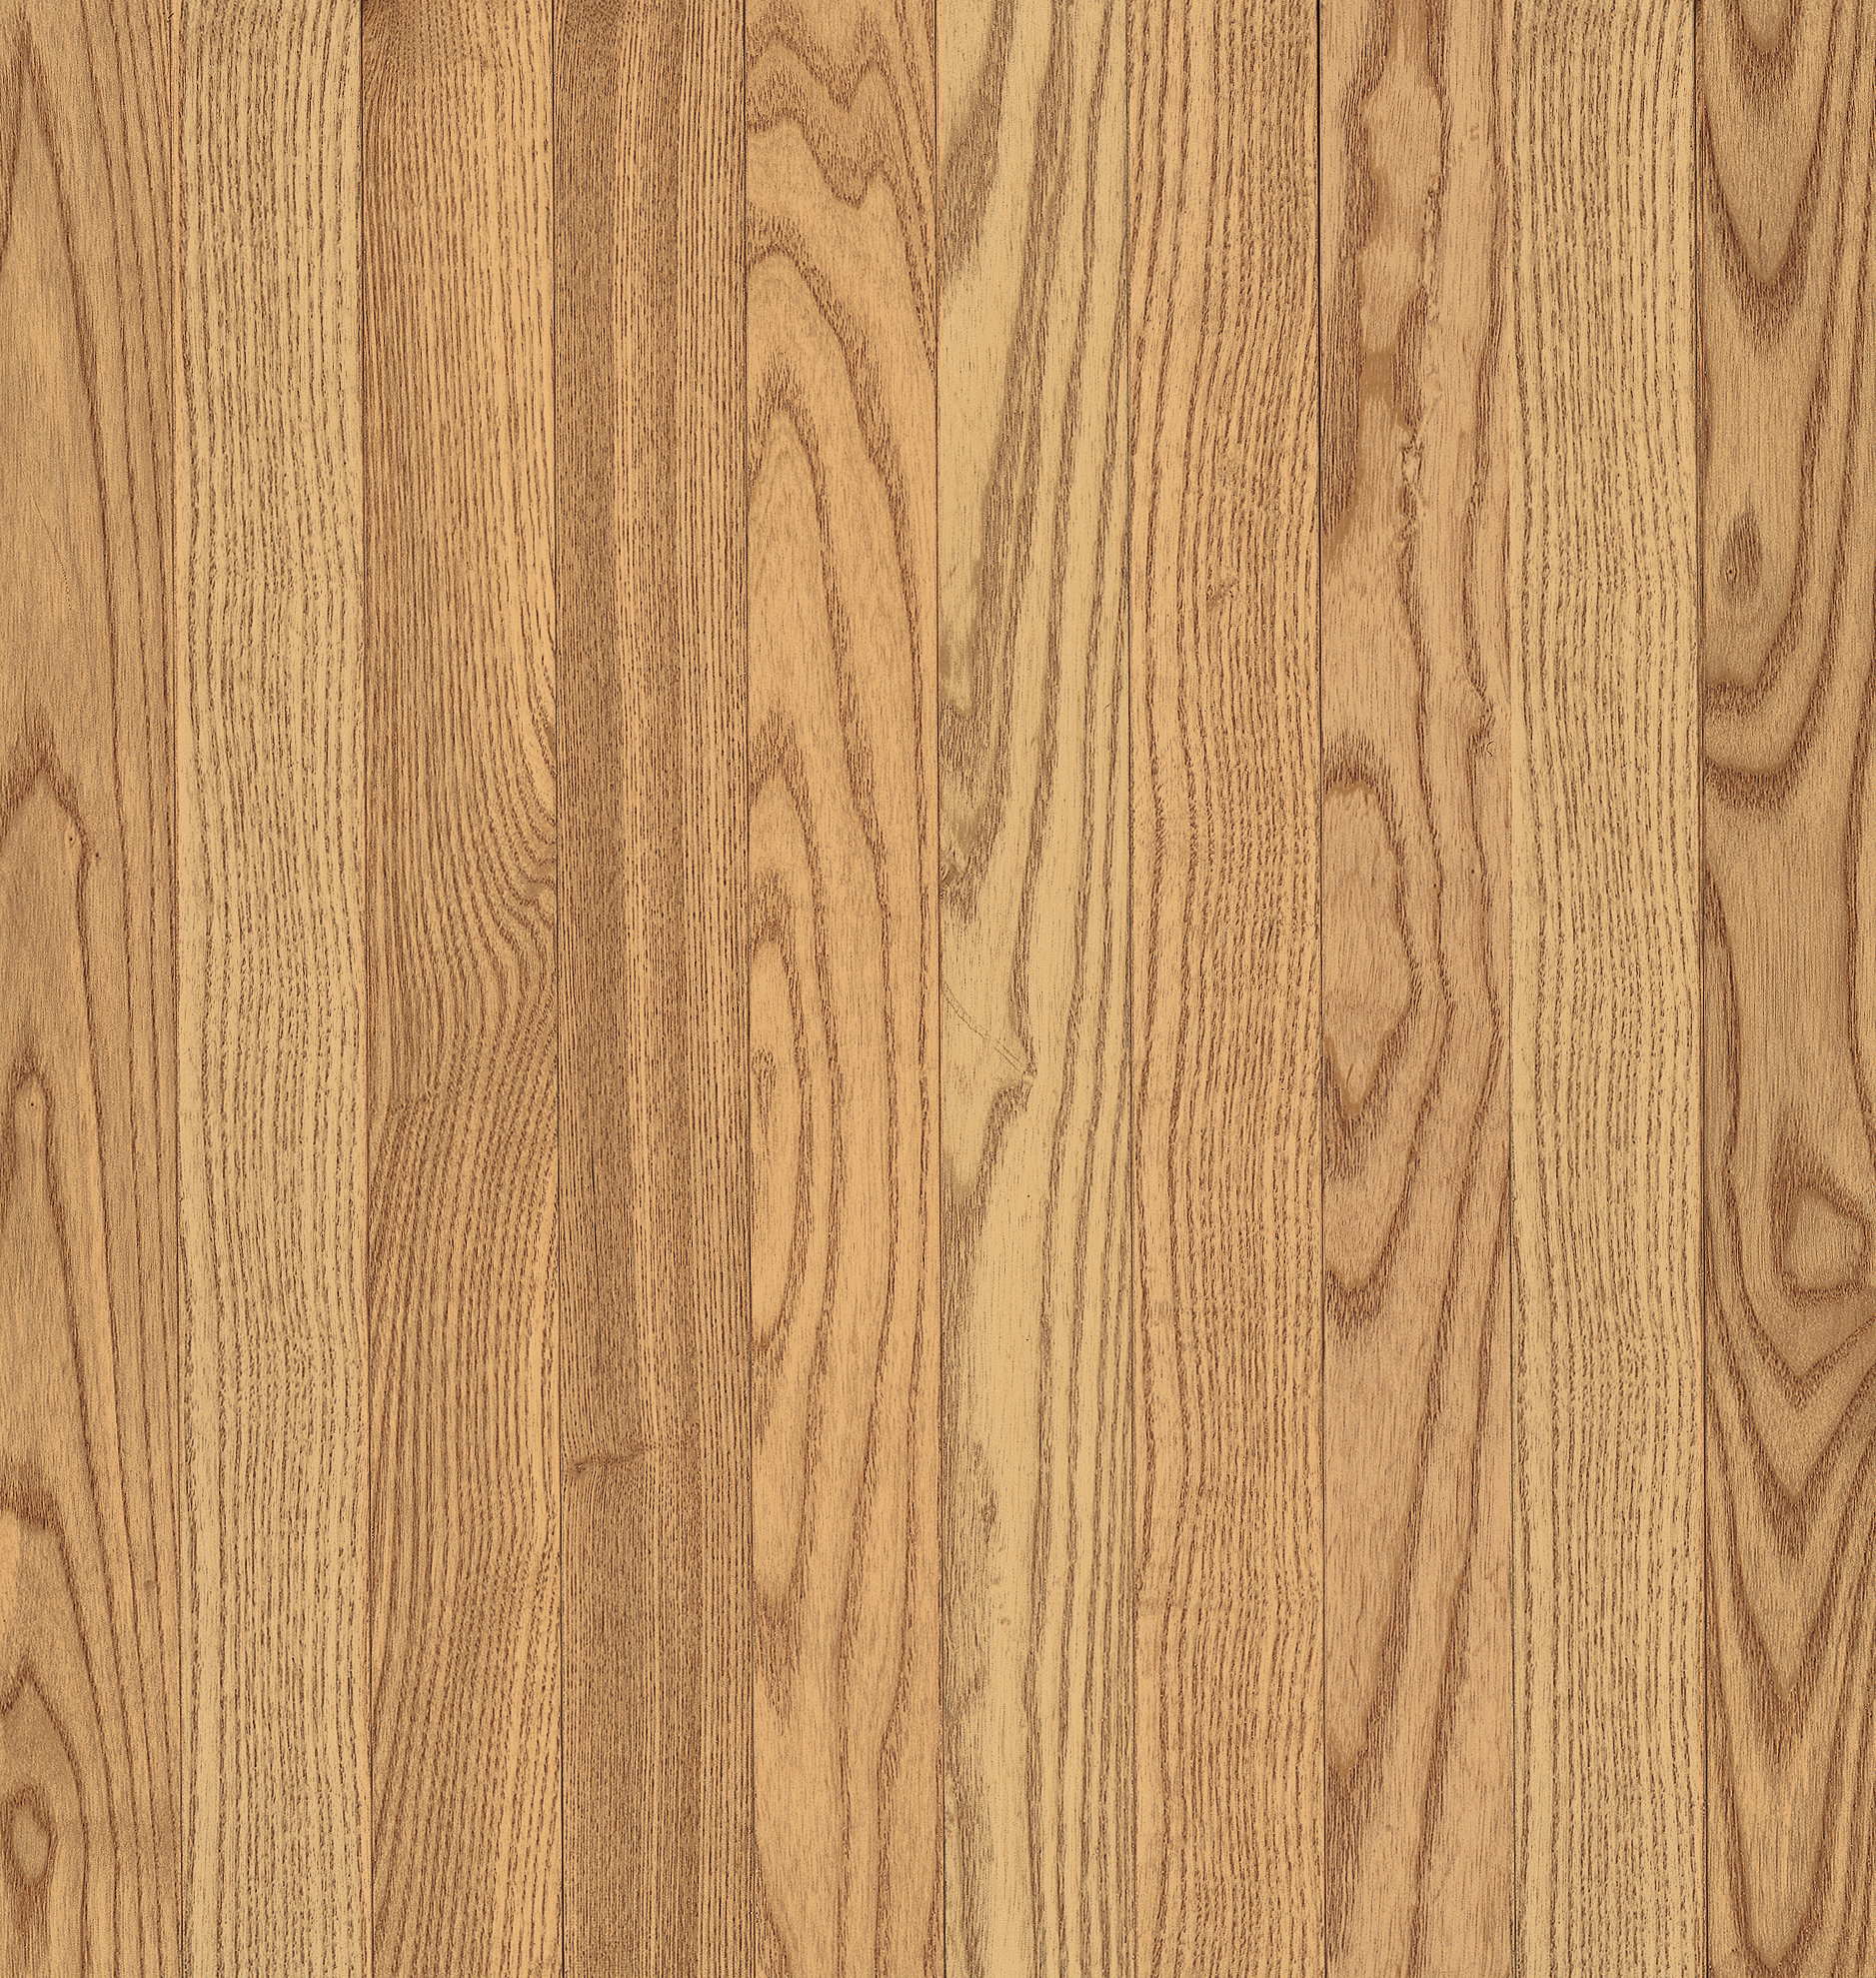 Oak Solid Hardwood Abc400, 3 8 Vs 3 4 Hardwood Flooring